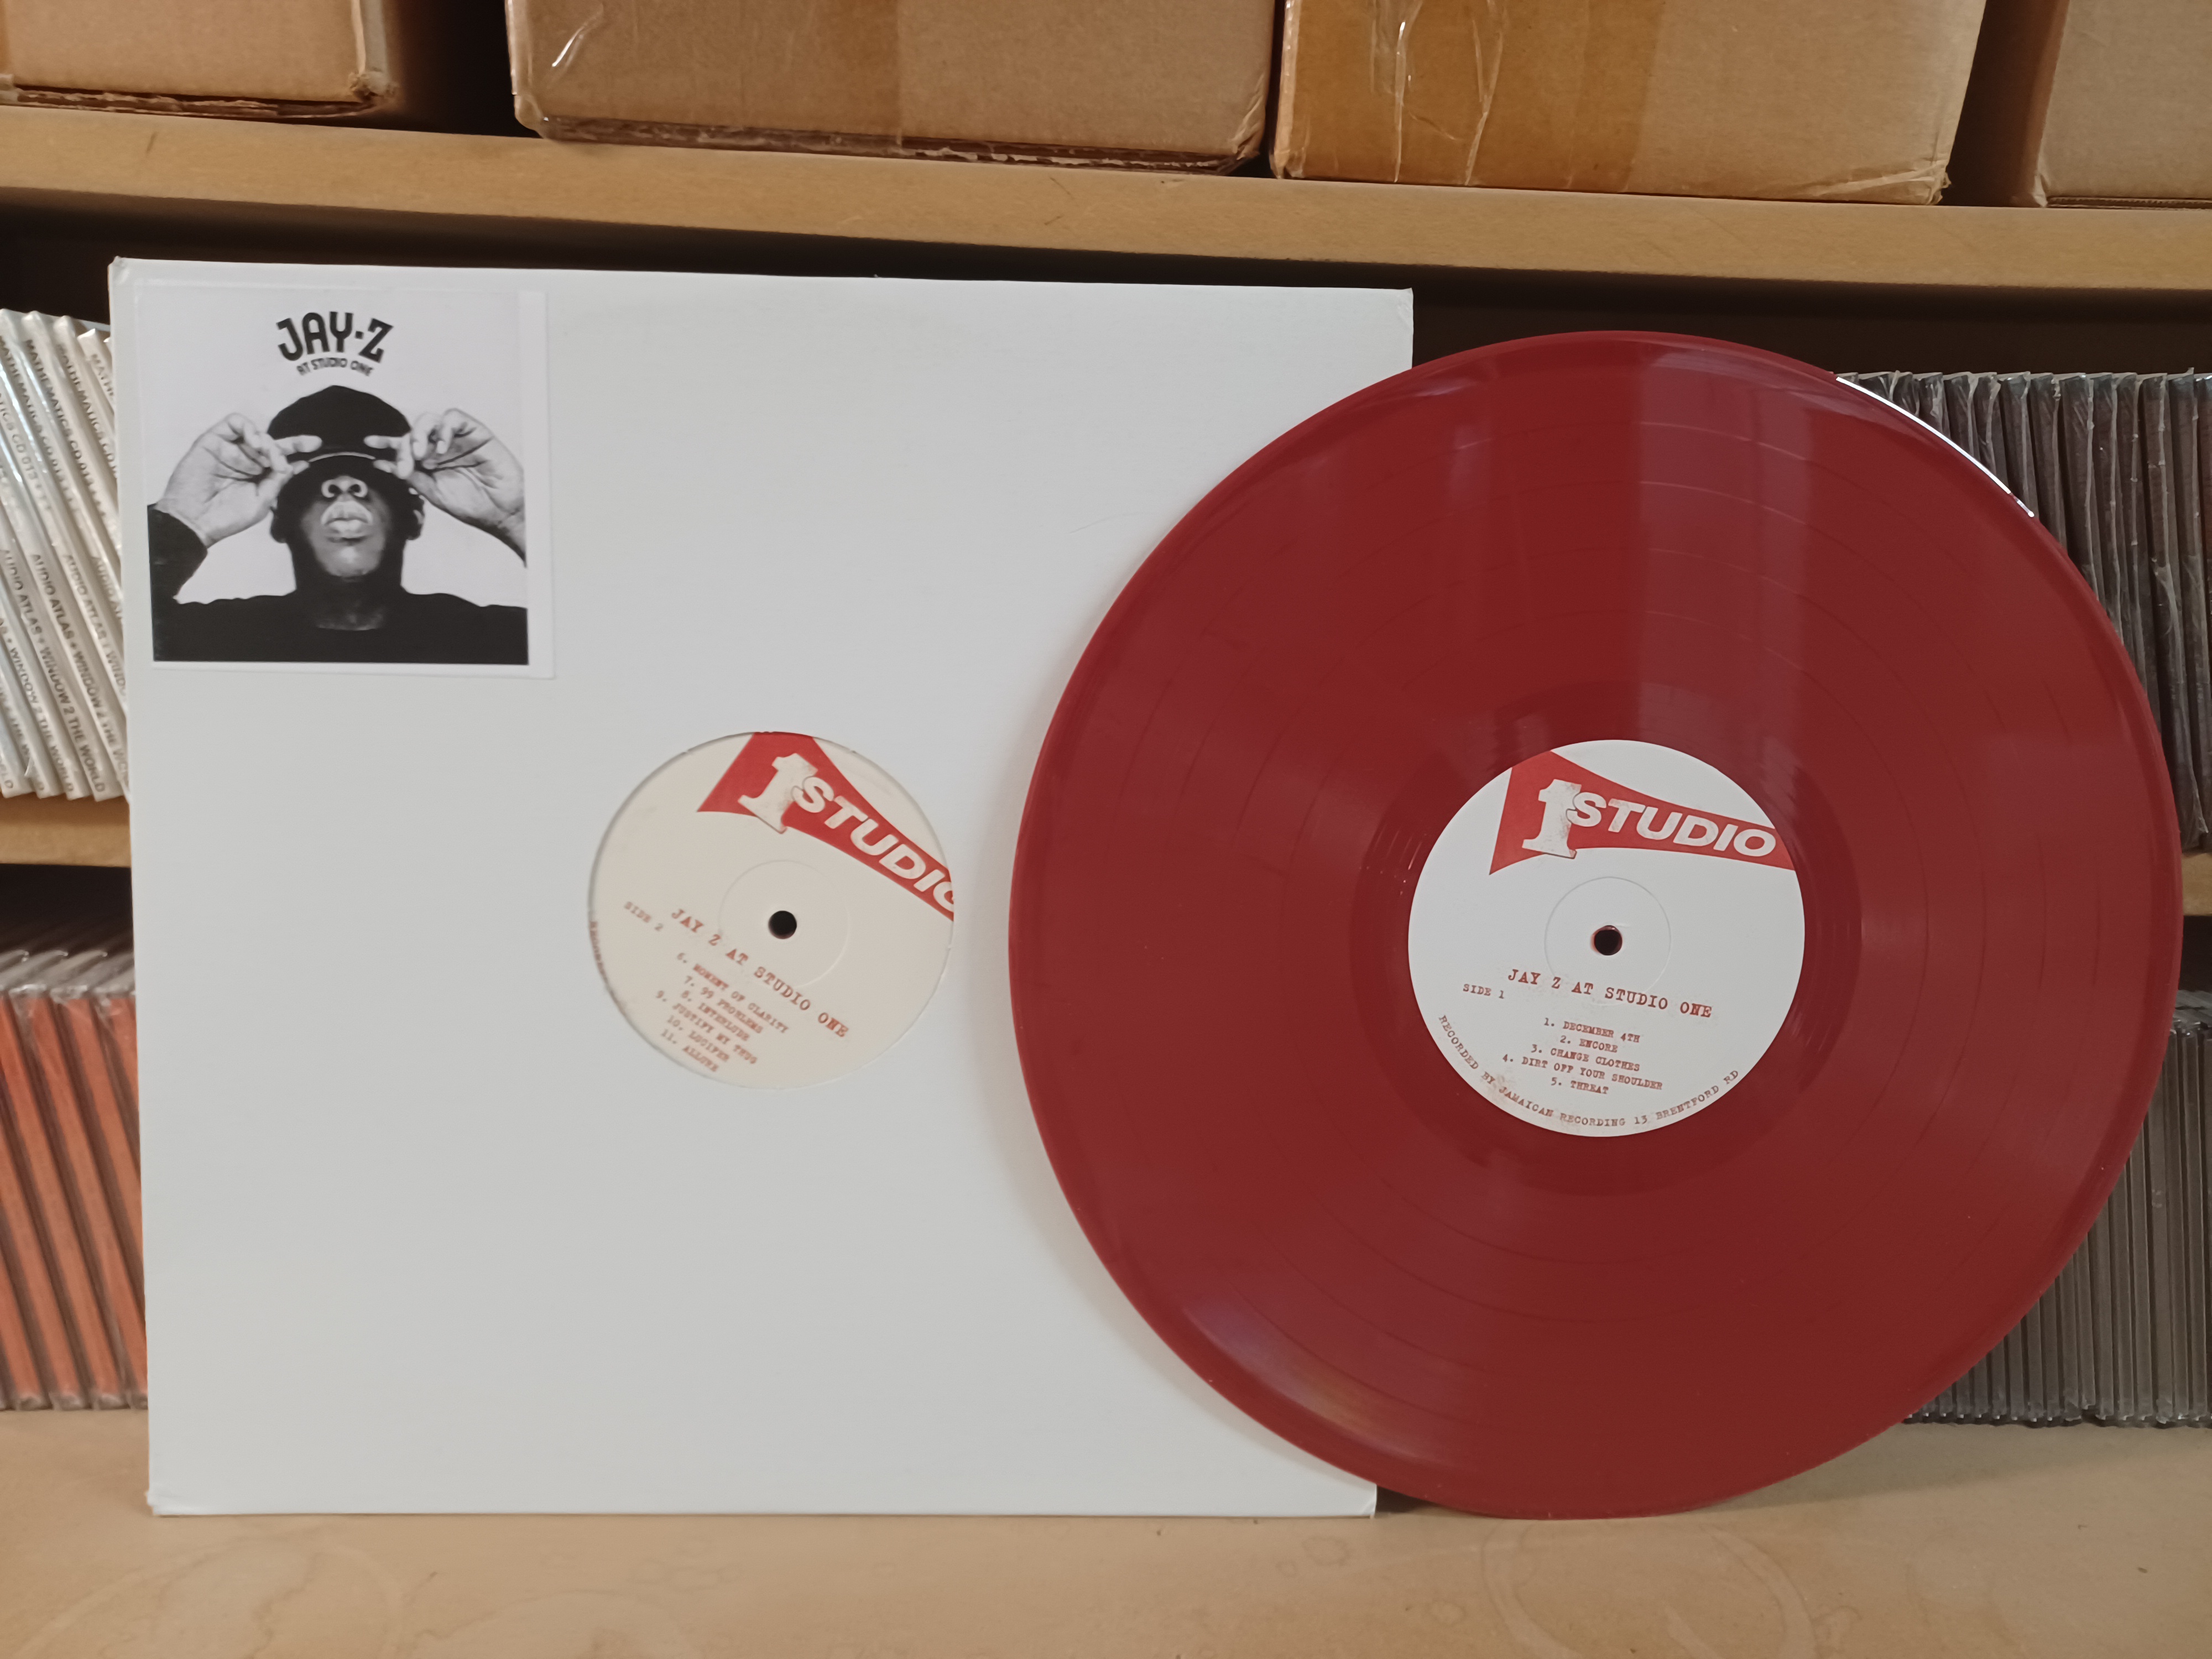 Jay-Z at Studio One/REGGAE MASHUP (RED VINYL) LP